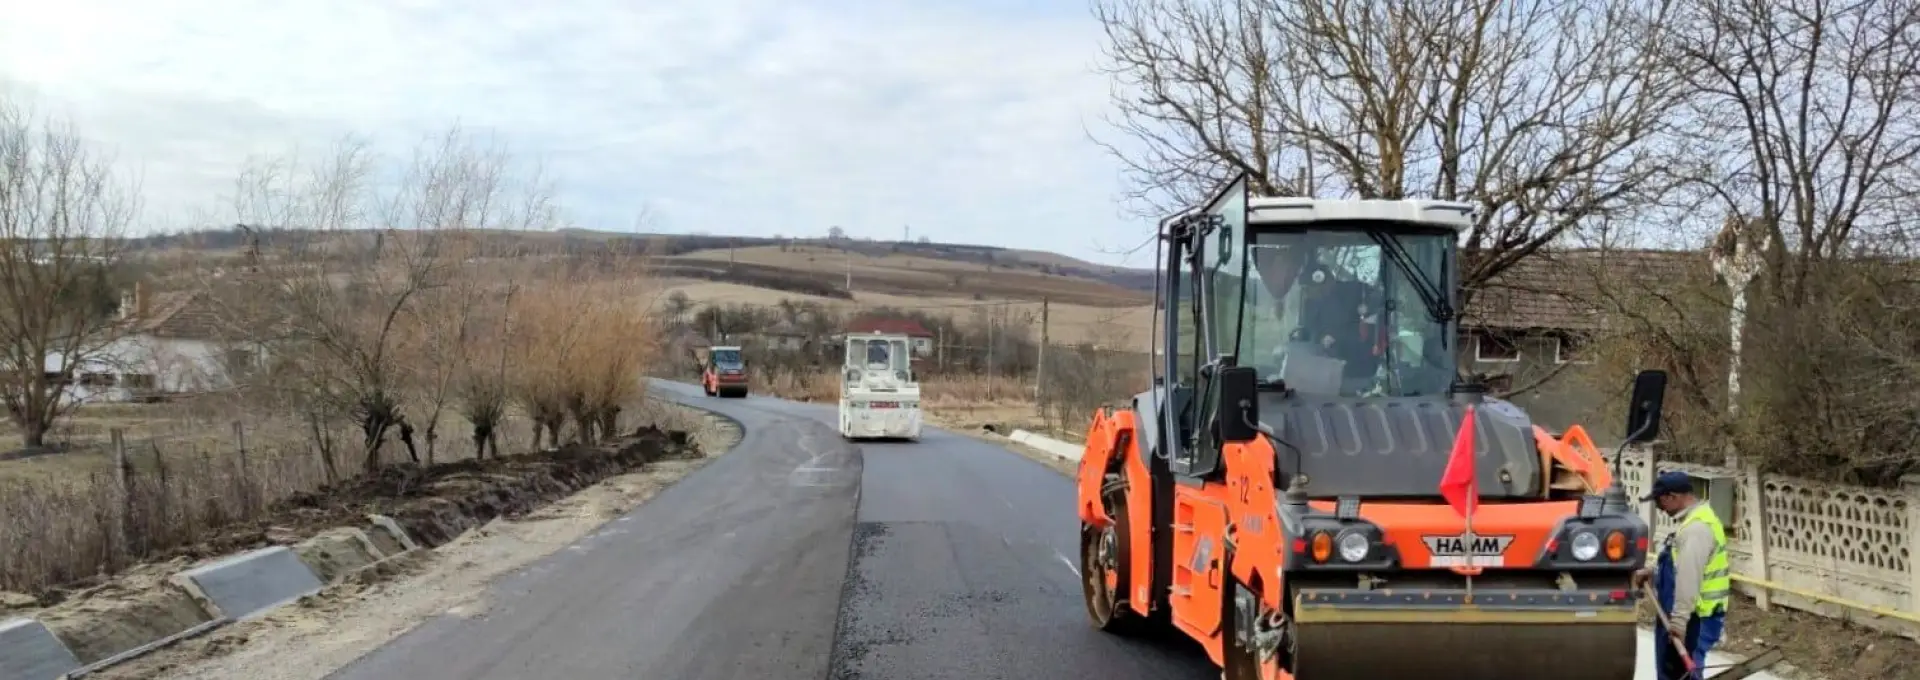 Foto Proiecte de peste 17 milioane lei, pentru modernizarea infrastructurii rutiere, în două comune din Olt, prin Anghel Saligny